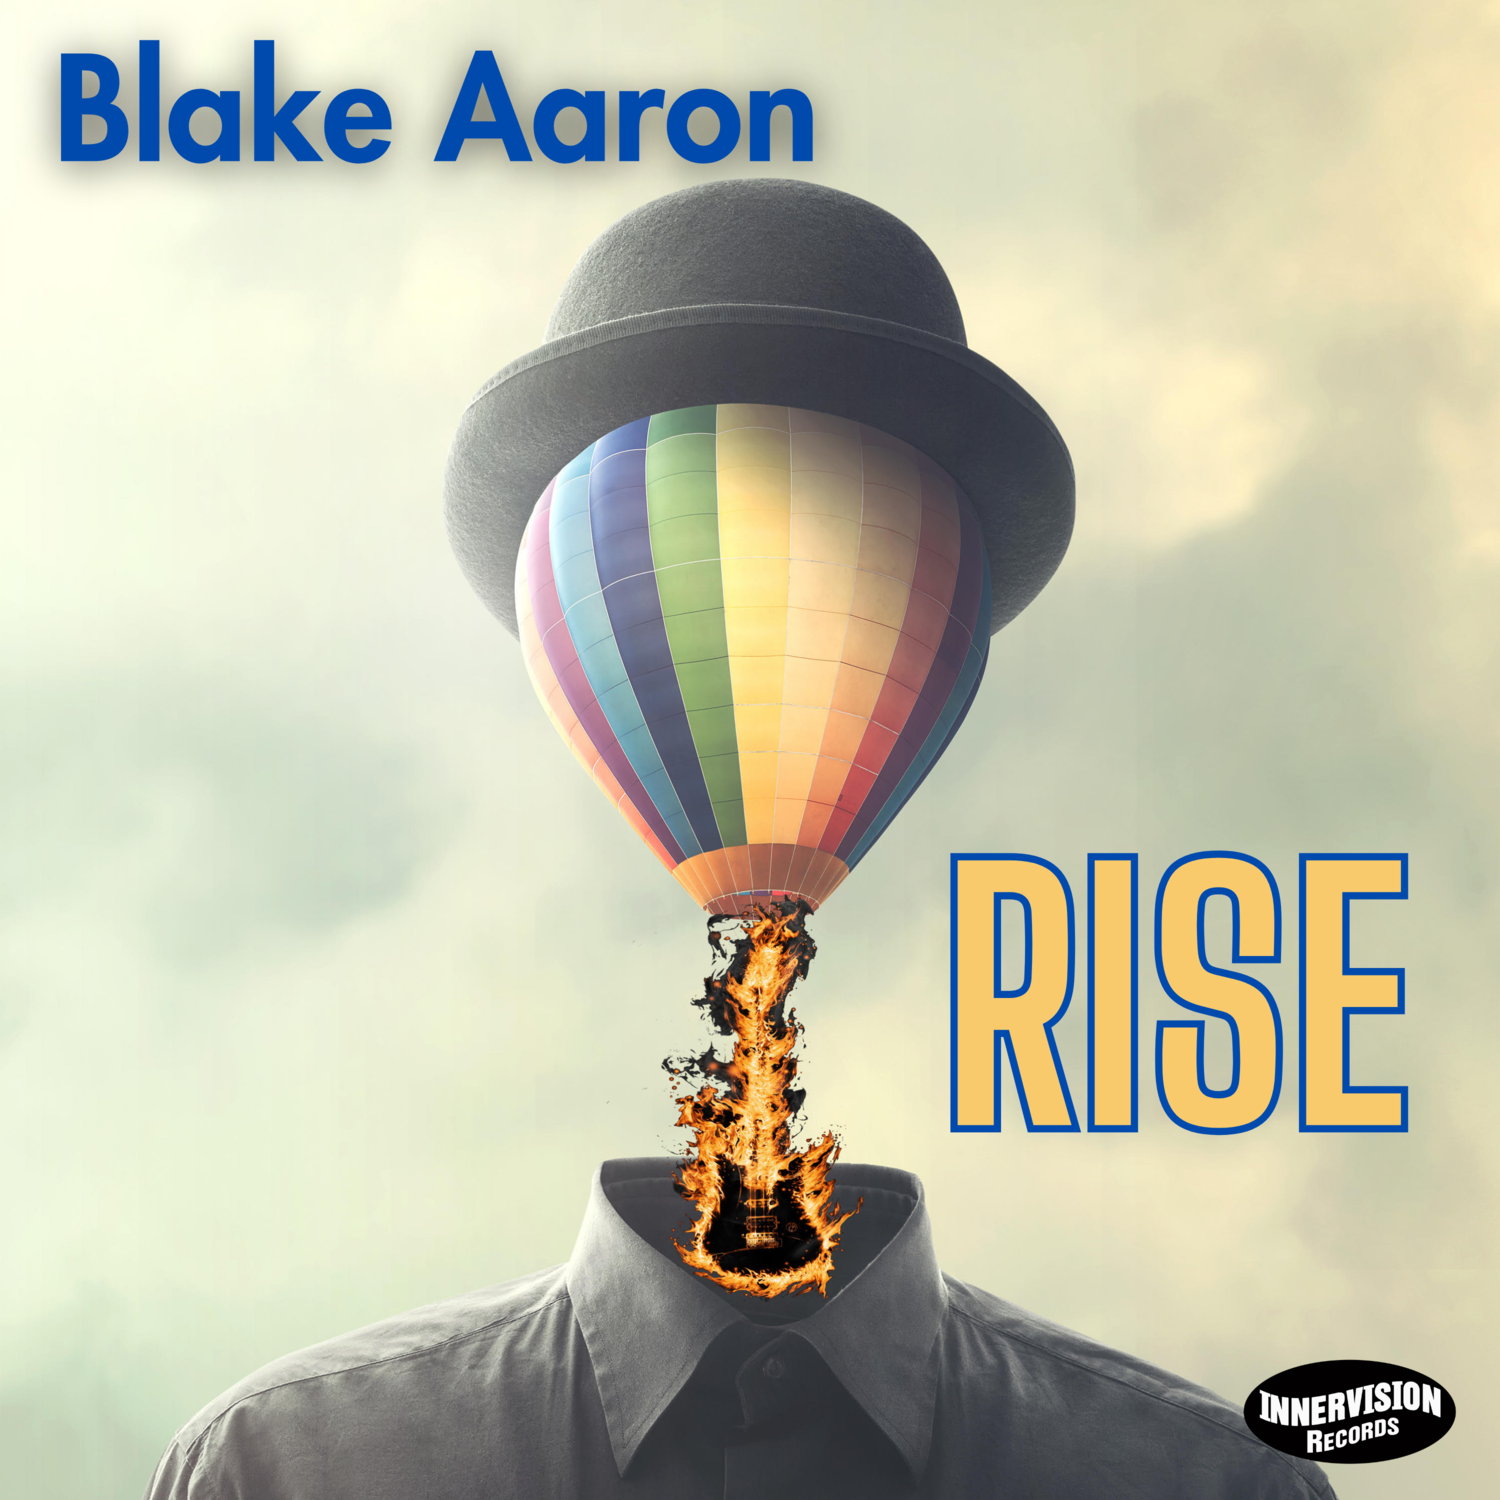 Blake Aaron ‘Rise’ – LISTEN